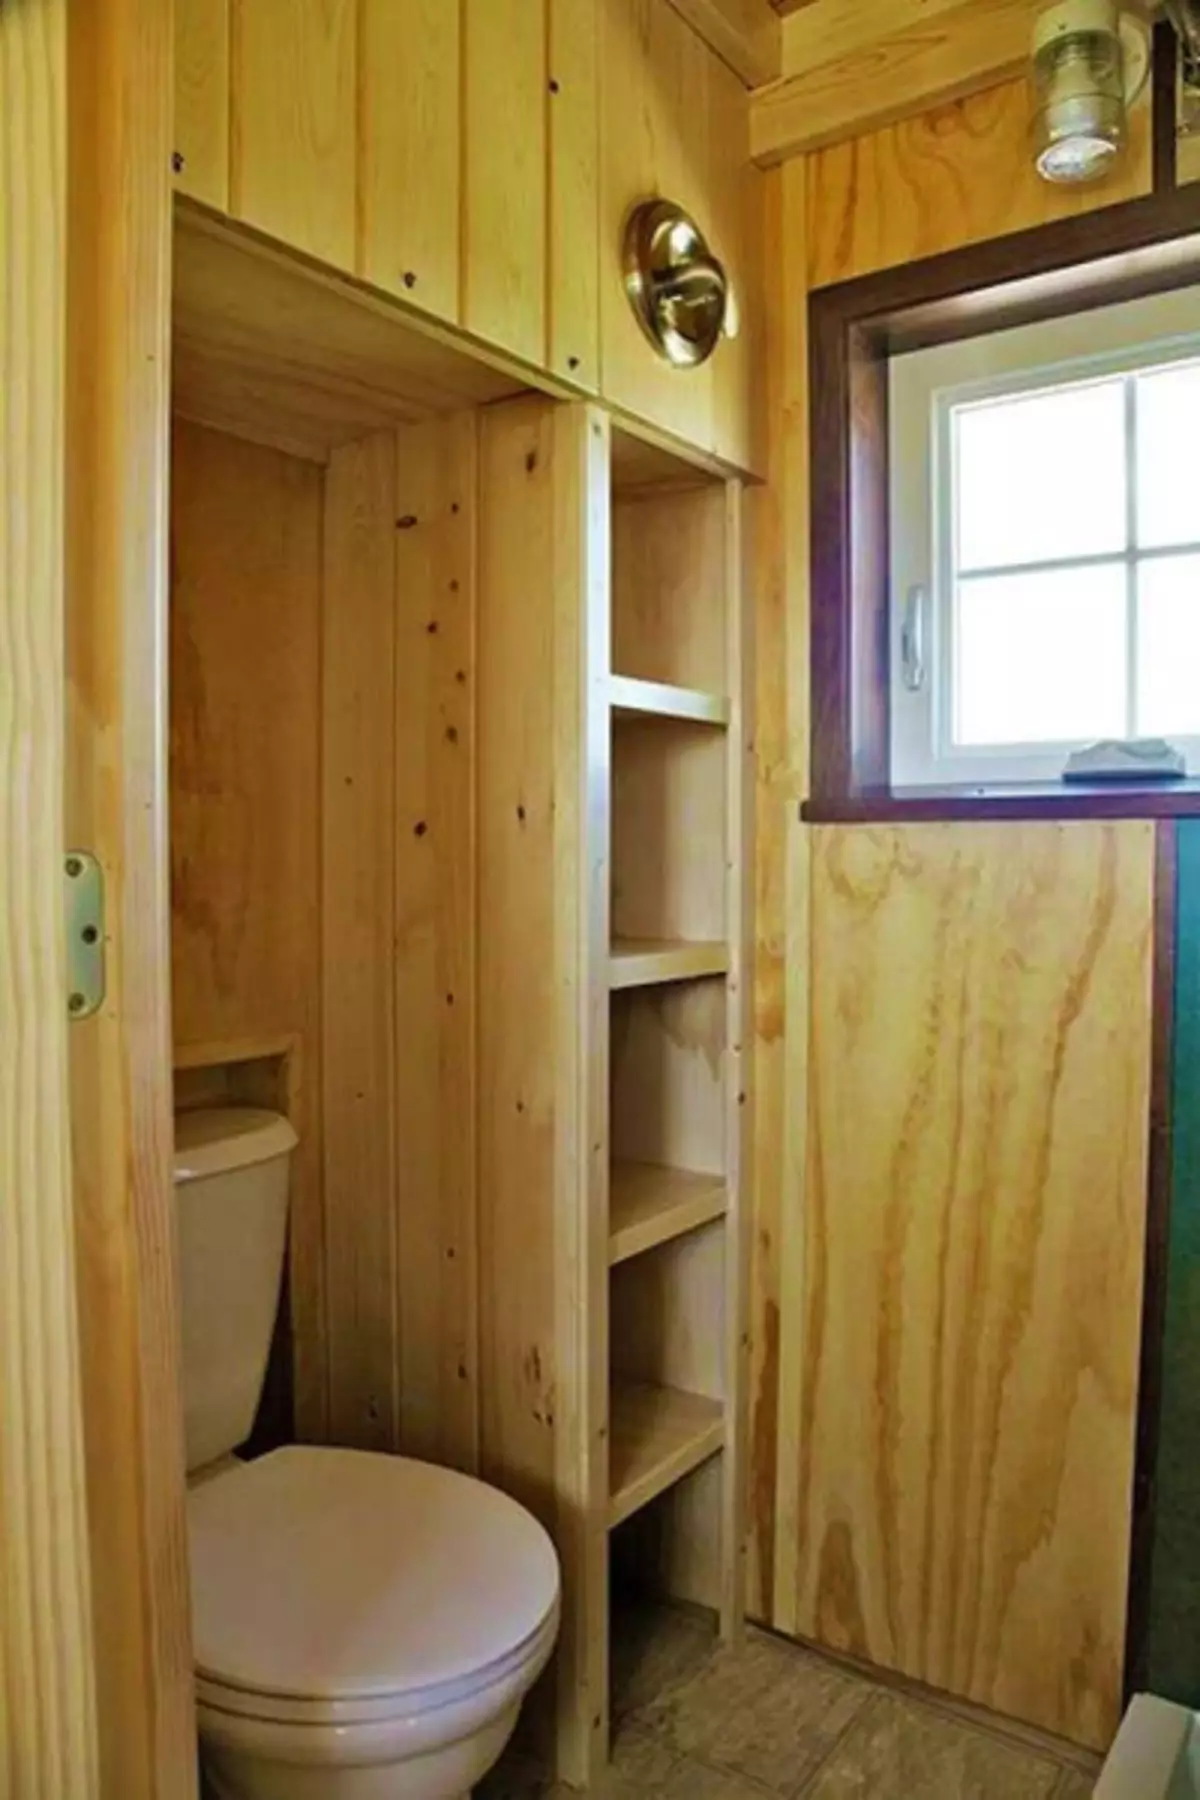 पिता और बेटे ने एक साधारण जीवन के लिए एक आरामदायक छोटे घर 18 वर्ग मीटर का निर्माण किया